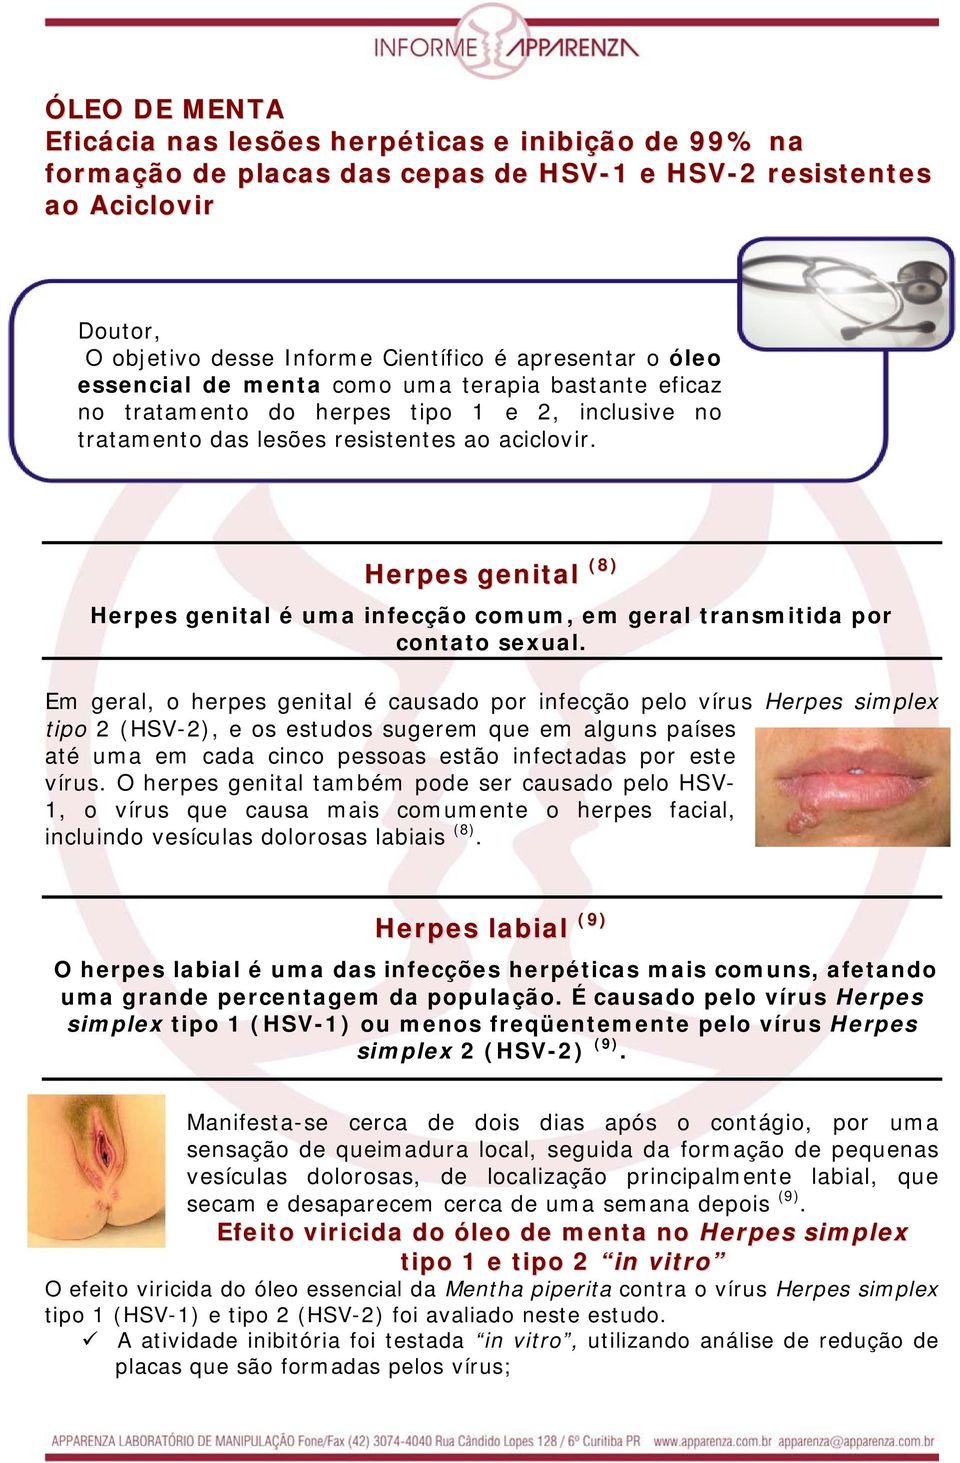 Herpes genital (8) Herpes genital é uma infecção comum, em geral transmitida por contato sexual.